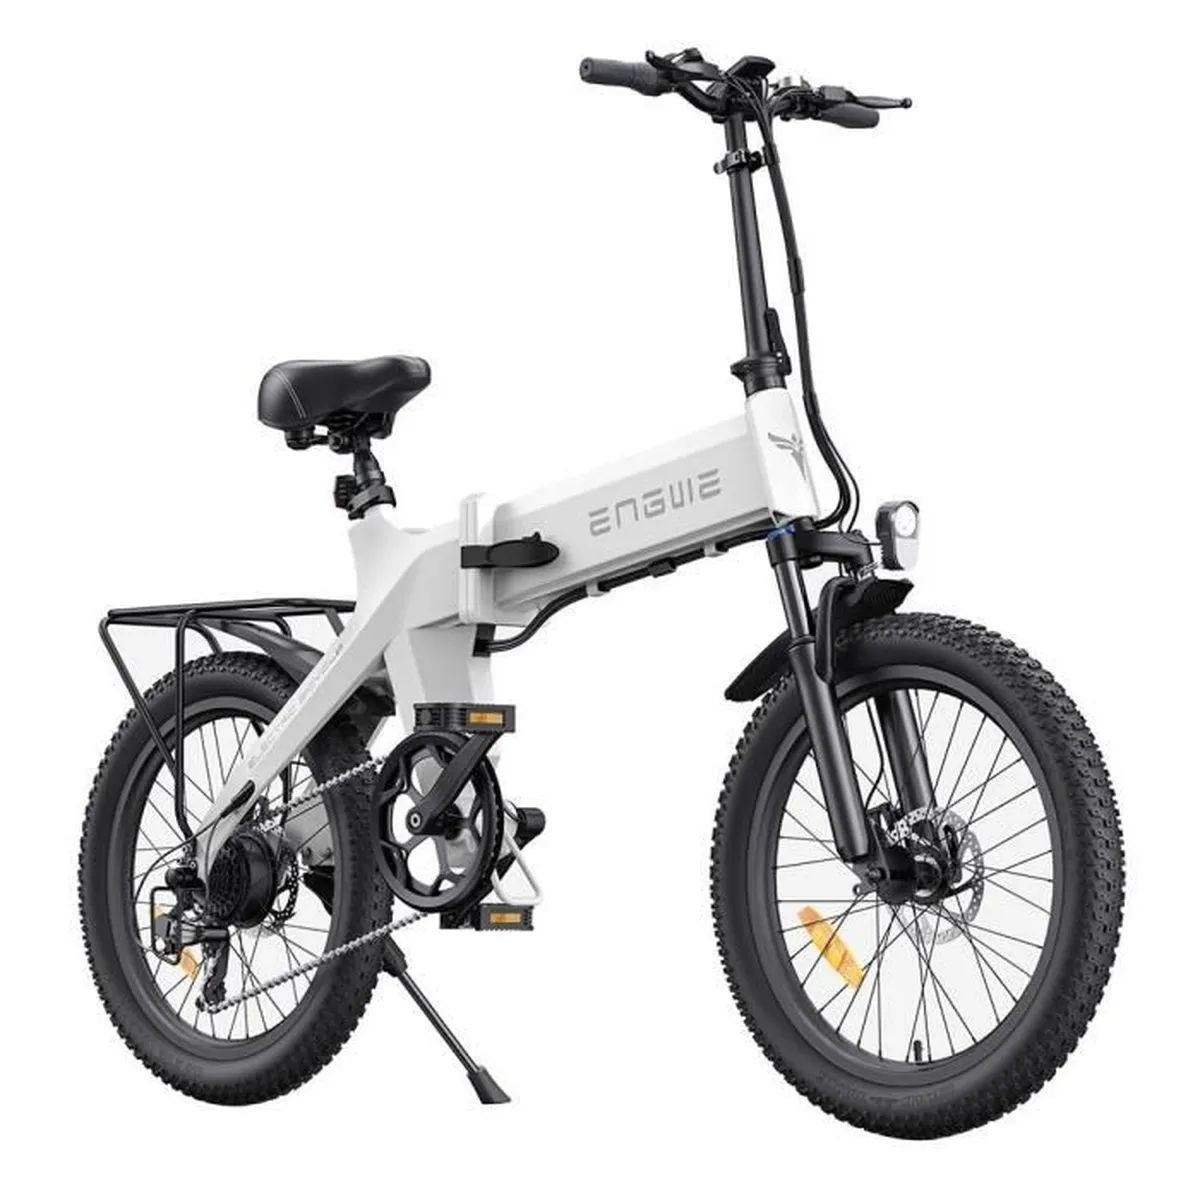 ENGWE C20 PRO EU Electric Bike: 250W Power, 561.6Wh Battery | 55KM Range